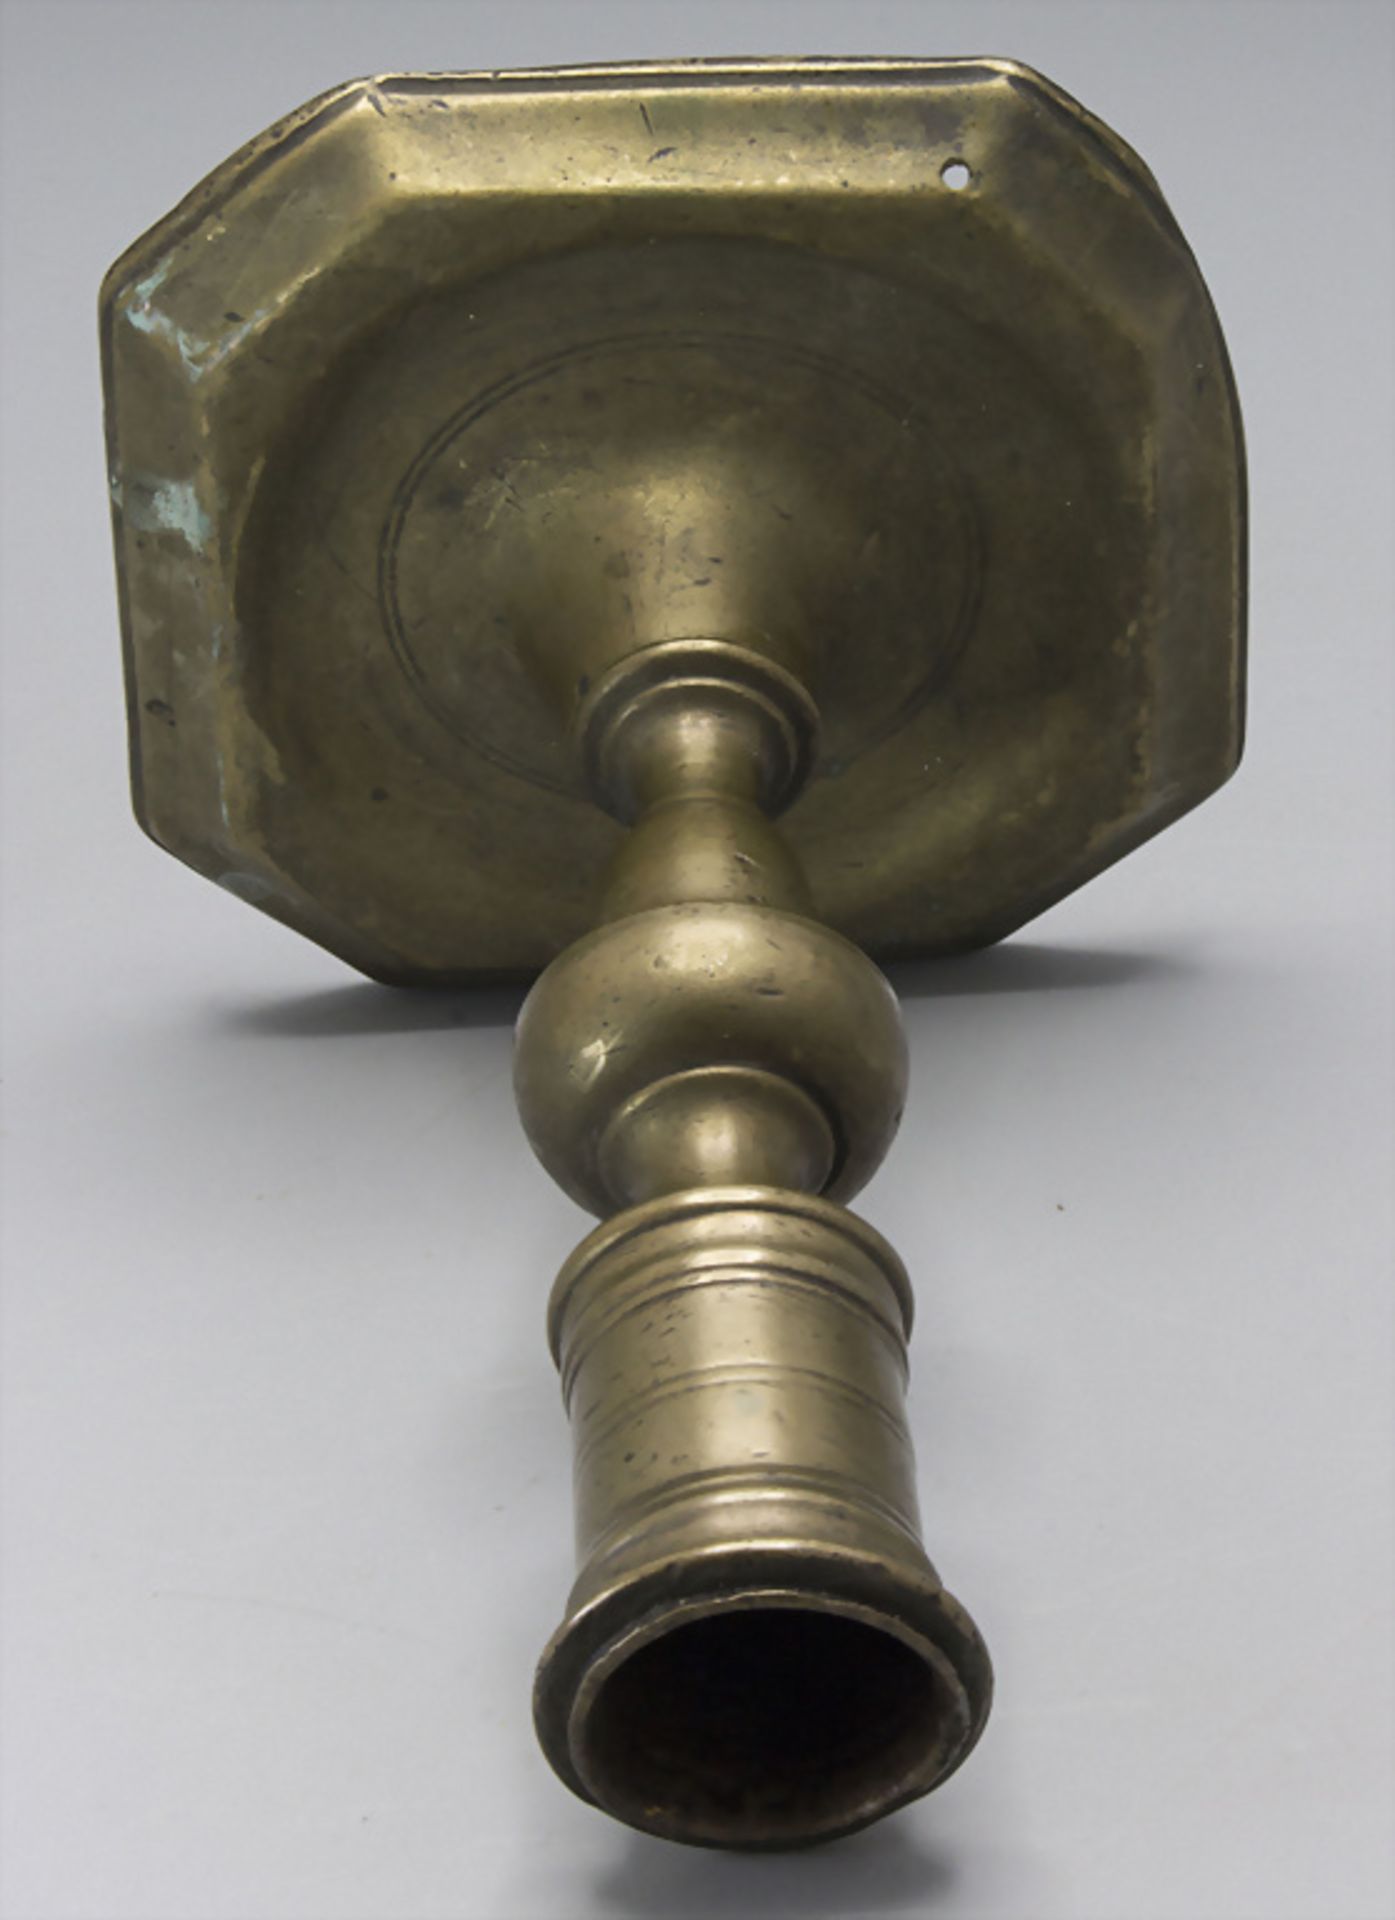 Bronze Kerzenleuchter / A bronze candlestick, wohl 16. / 17. Jh. - Image 2 of 3